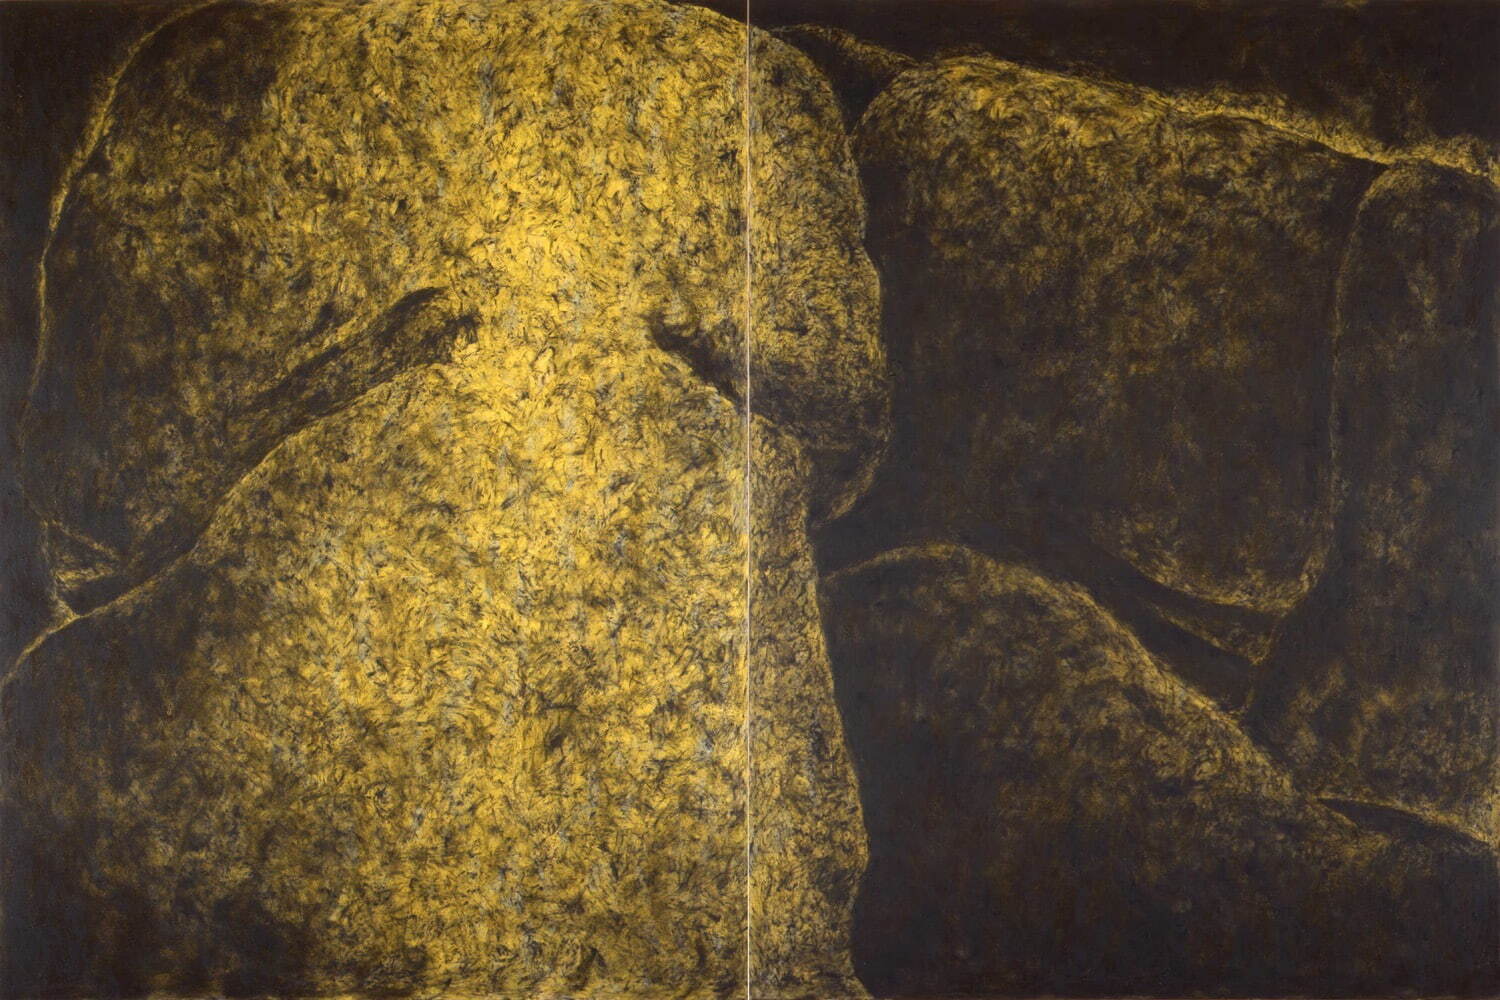 吉田克朗 《触"体-190 A & B"》 1992年
油彩、アクリル、黒鉛、マットメディウム、カンヴァス 神奈川県立近代美術館
©The Estate of Katsuro Yoshida / Courtesy of Yumiko Chiba Associates